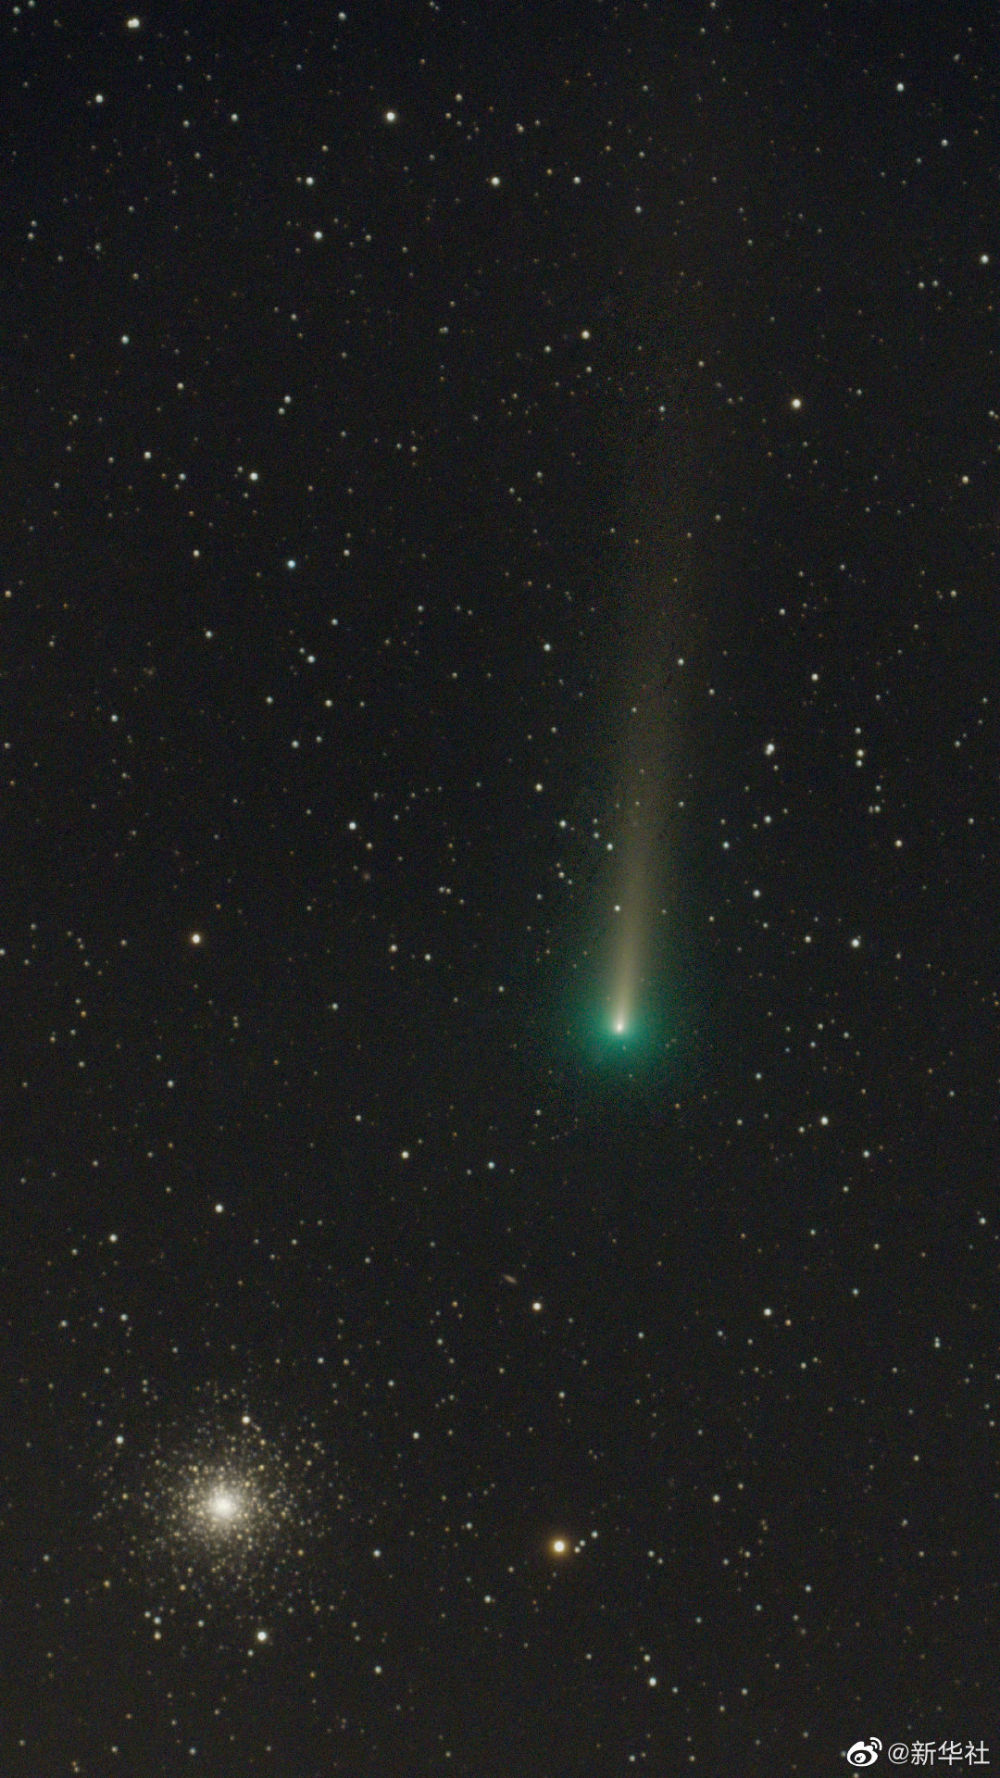 市天文学会理事,天文科普专家修立鹏说,c/2021 a1是一颗长周期彗星,于